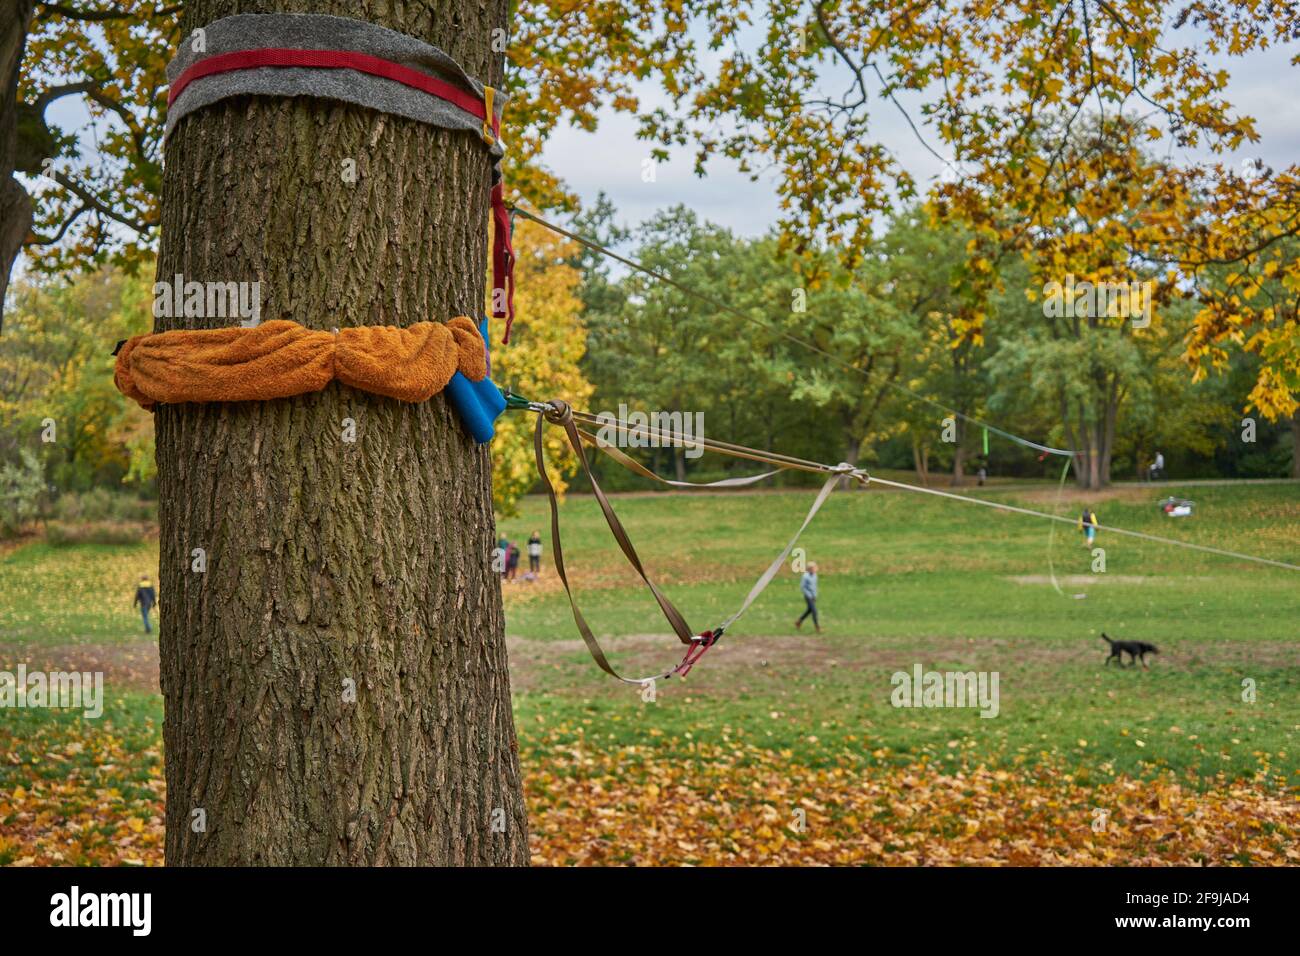 Volkspark Hasenheide, Befestigung von Slackline an einem Baum, Bäume mit Herbstlaub, Neukölln, Berlin, Deutschland Foto Stock